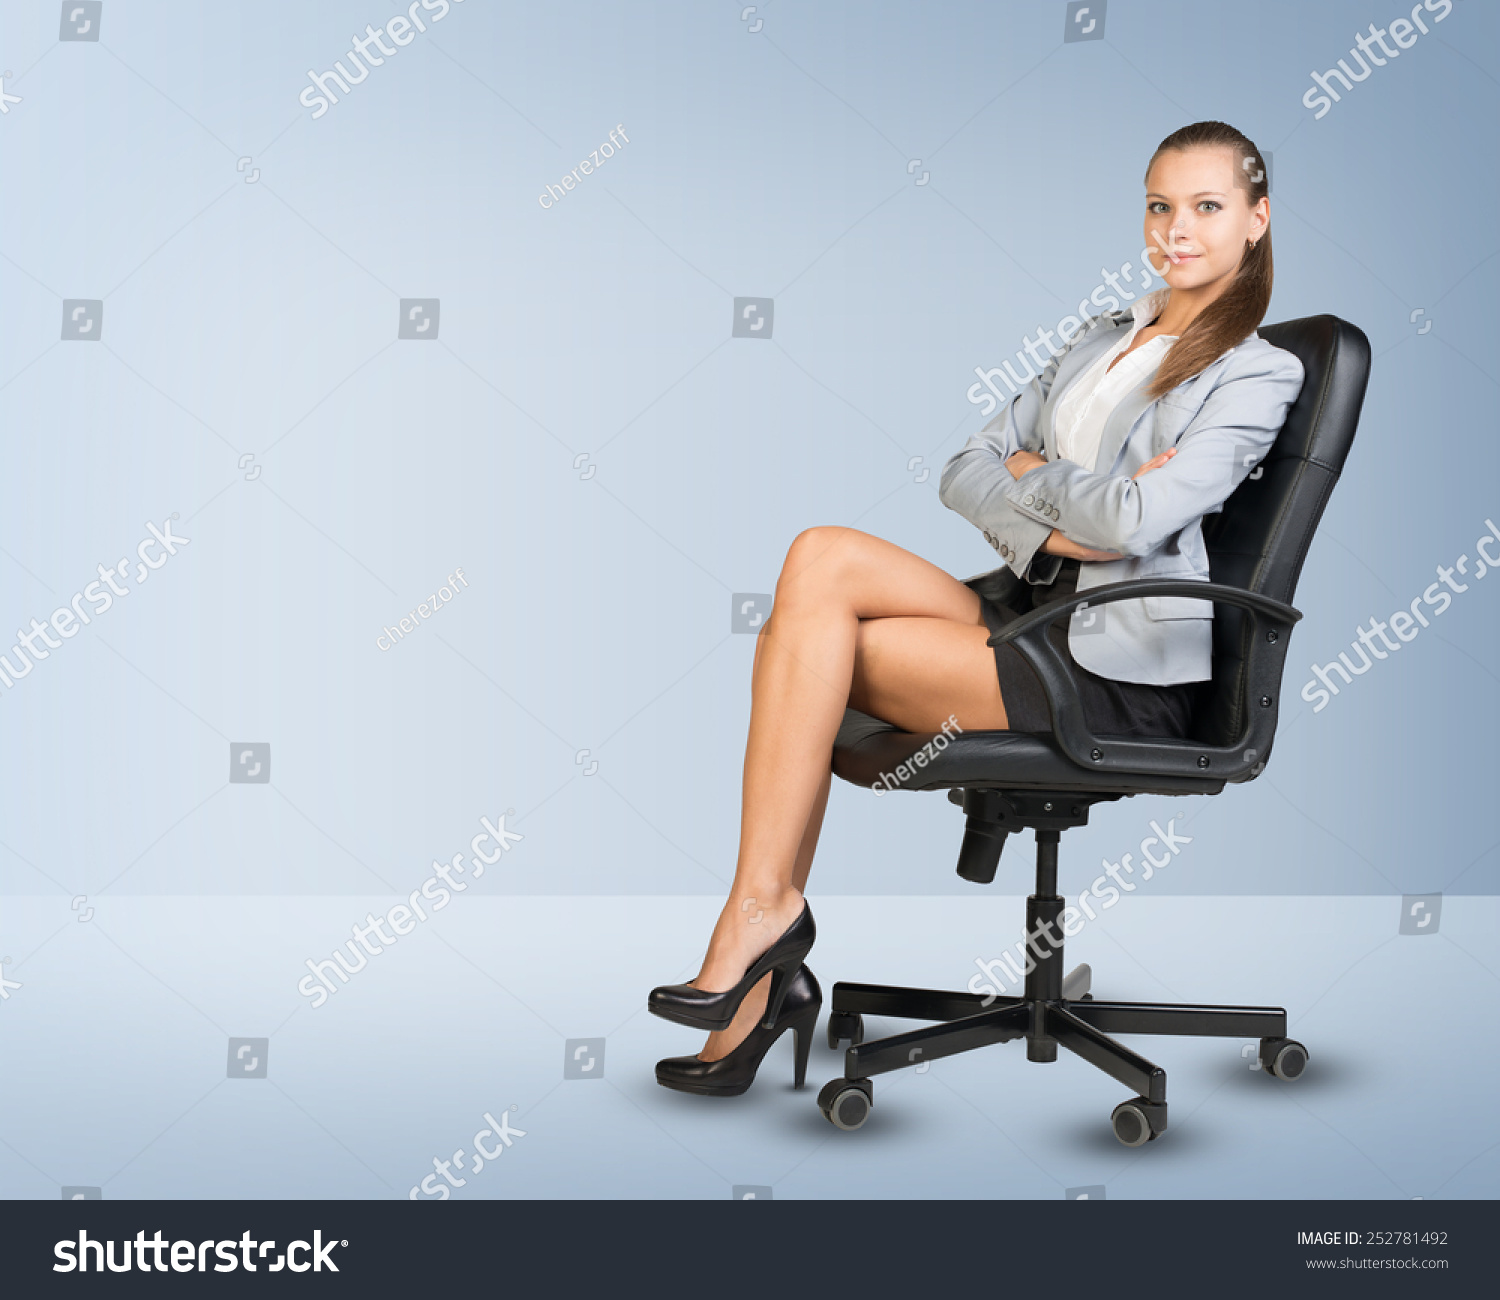 Сидя в офисном кресле жена сняла трусы фото